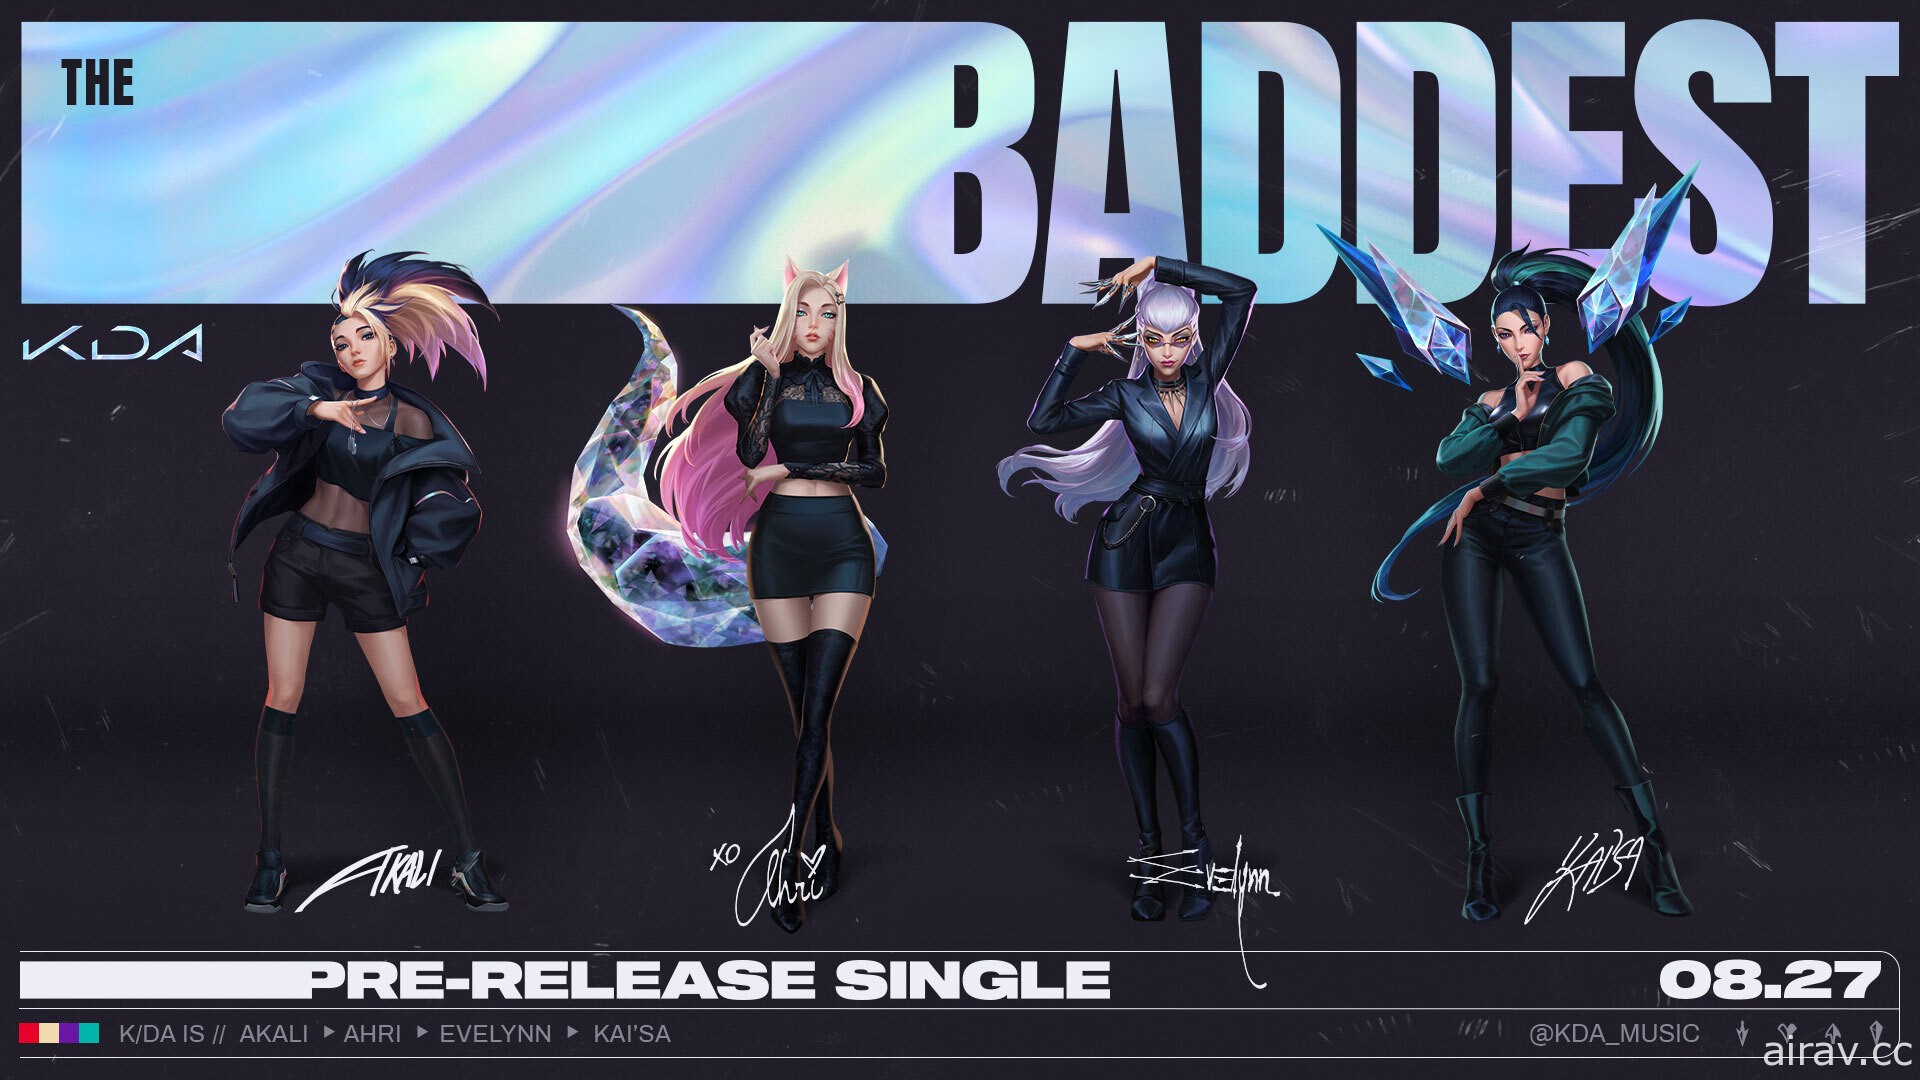 《英雄聯盟》揭開虛擬團體 K/DA 新單曲《The BADDEST》真人舞蹈版影片